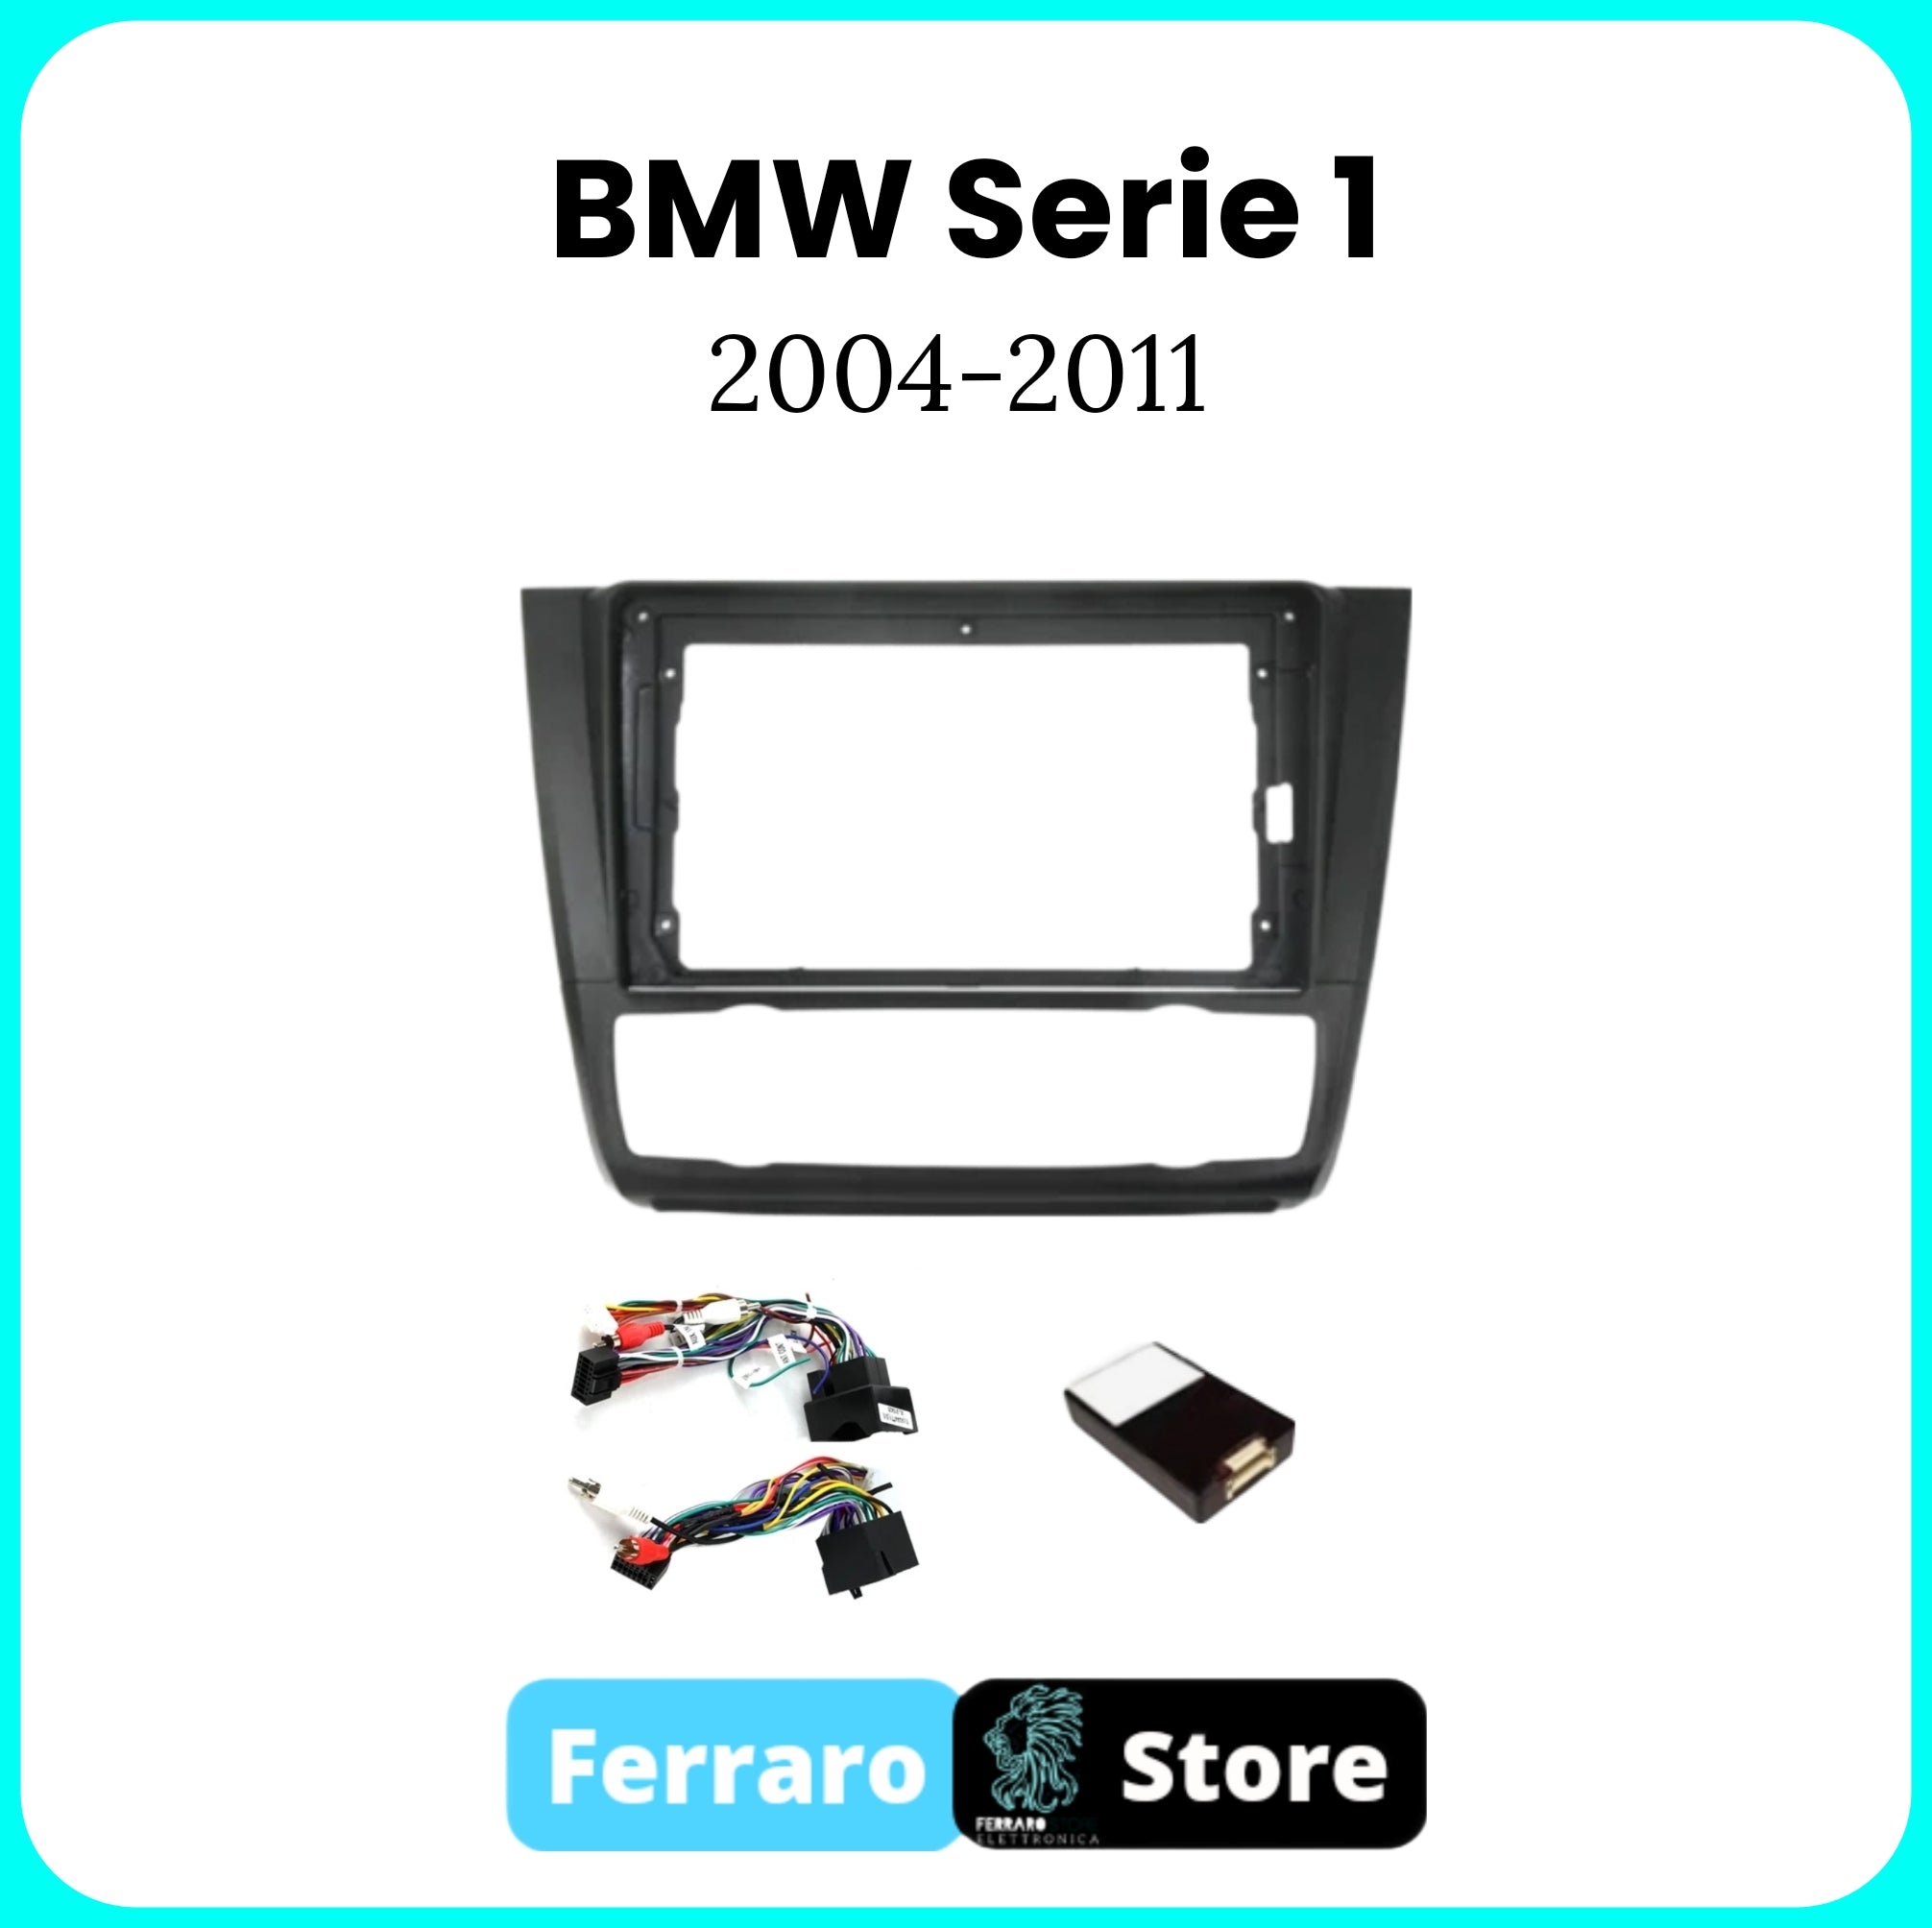 Kit Montaggio Autoradio 9"Pollici BMW SERIE 1 / E87 / E81 / E82 / E88 [2004 - 2011] - Mascherina, Cablaggio Autoradio Android